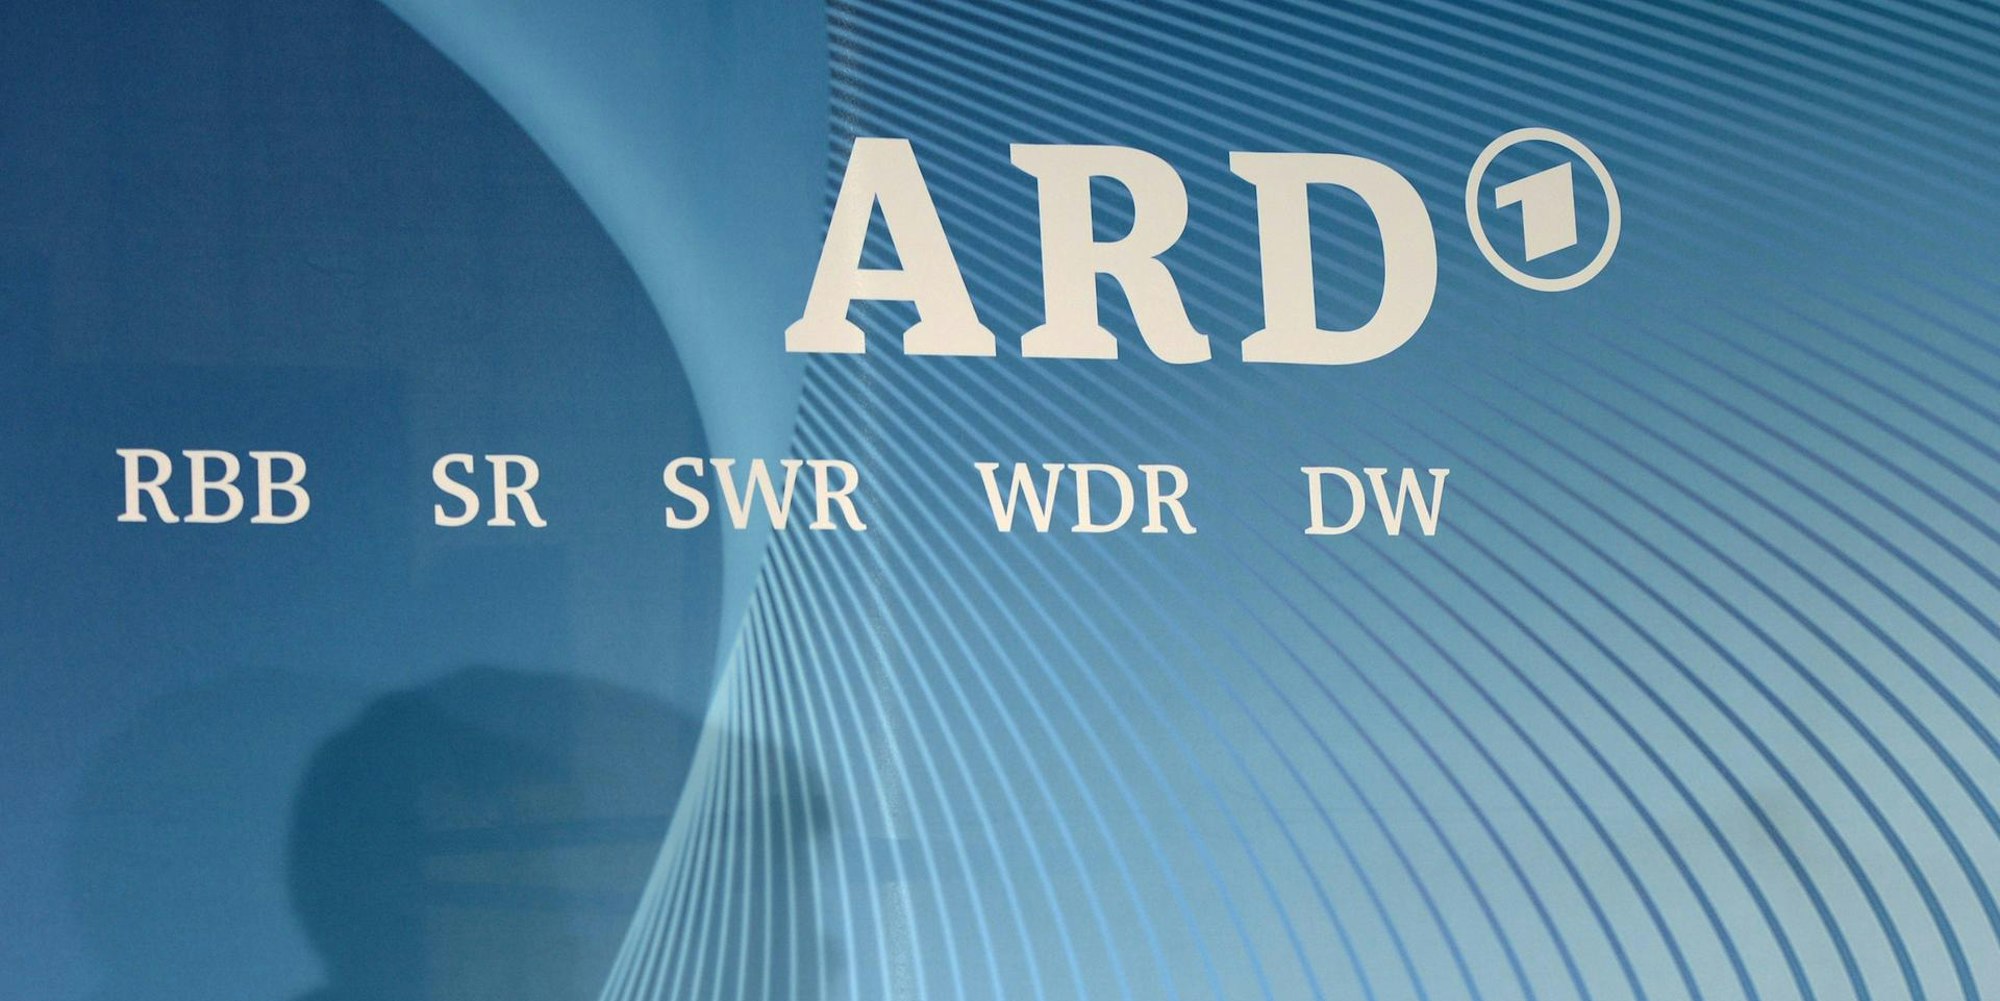 ARD_Logo_29112020